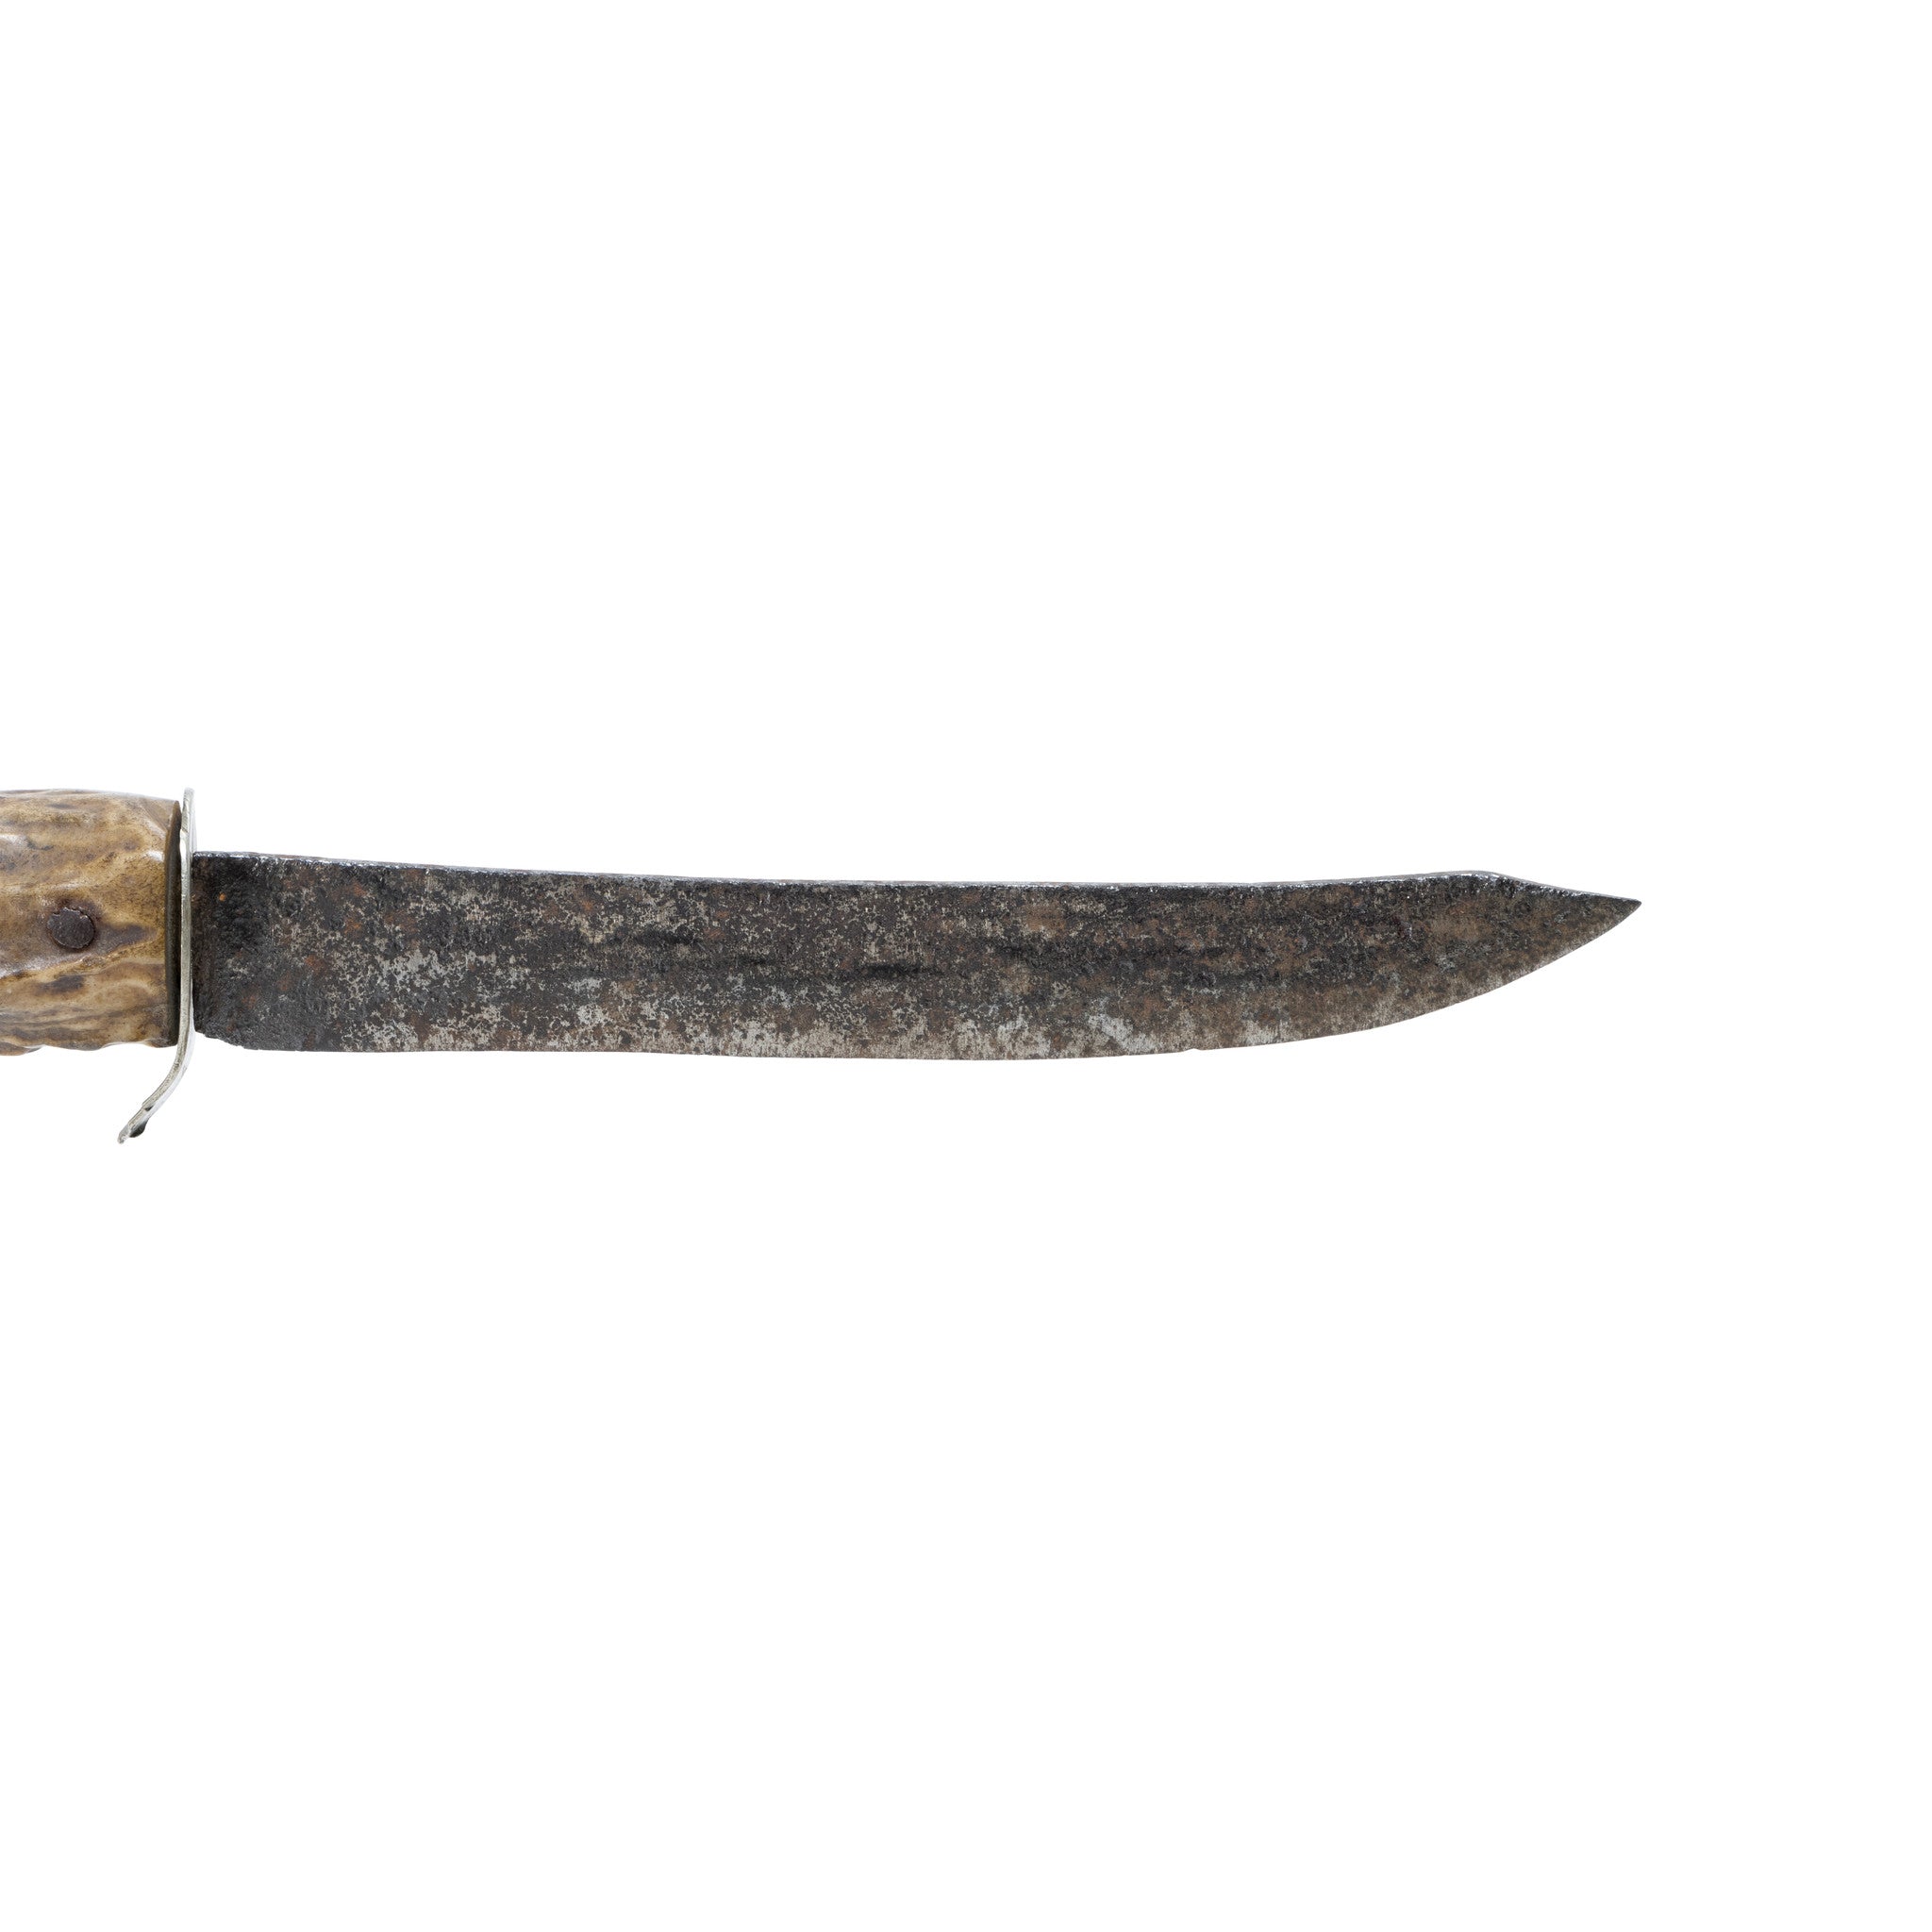 Northern Plains File Knife